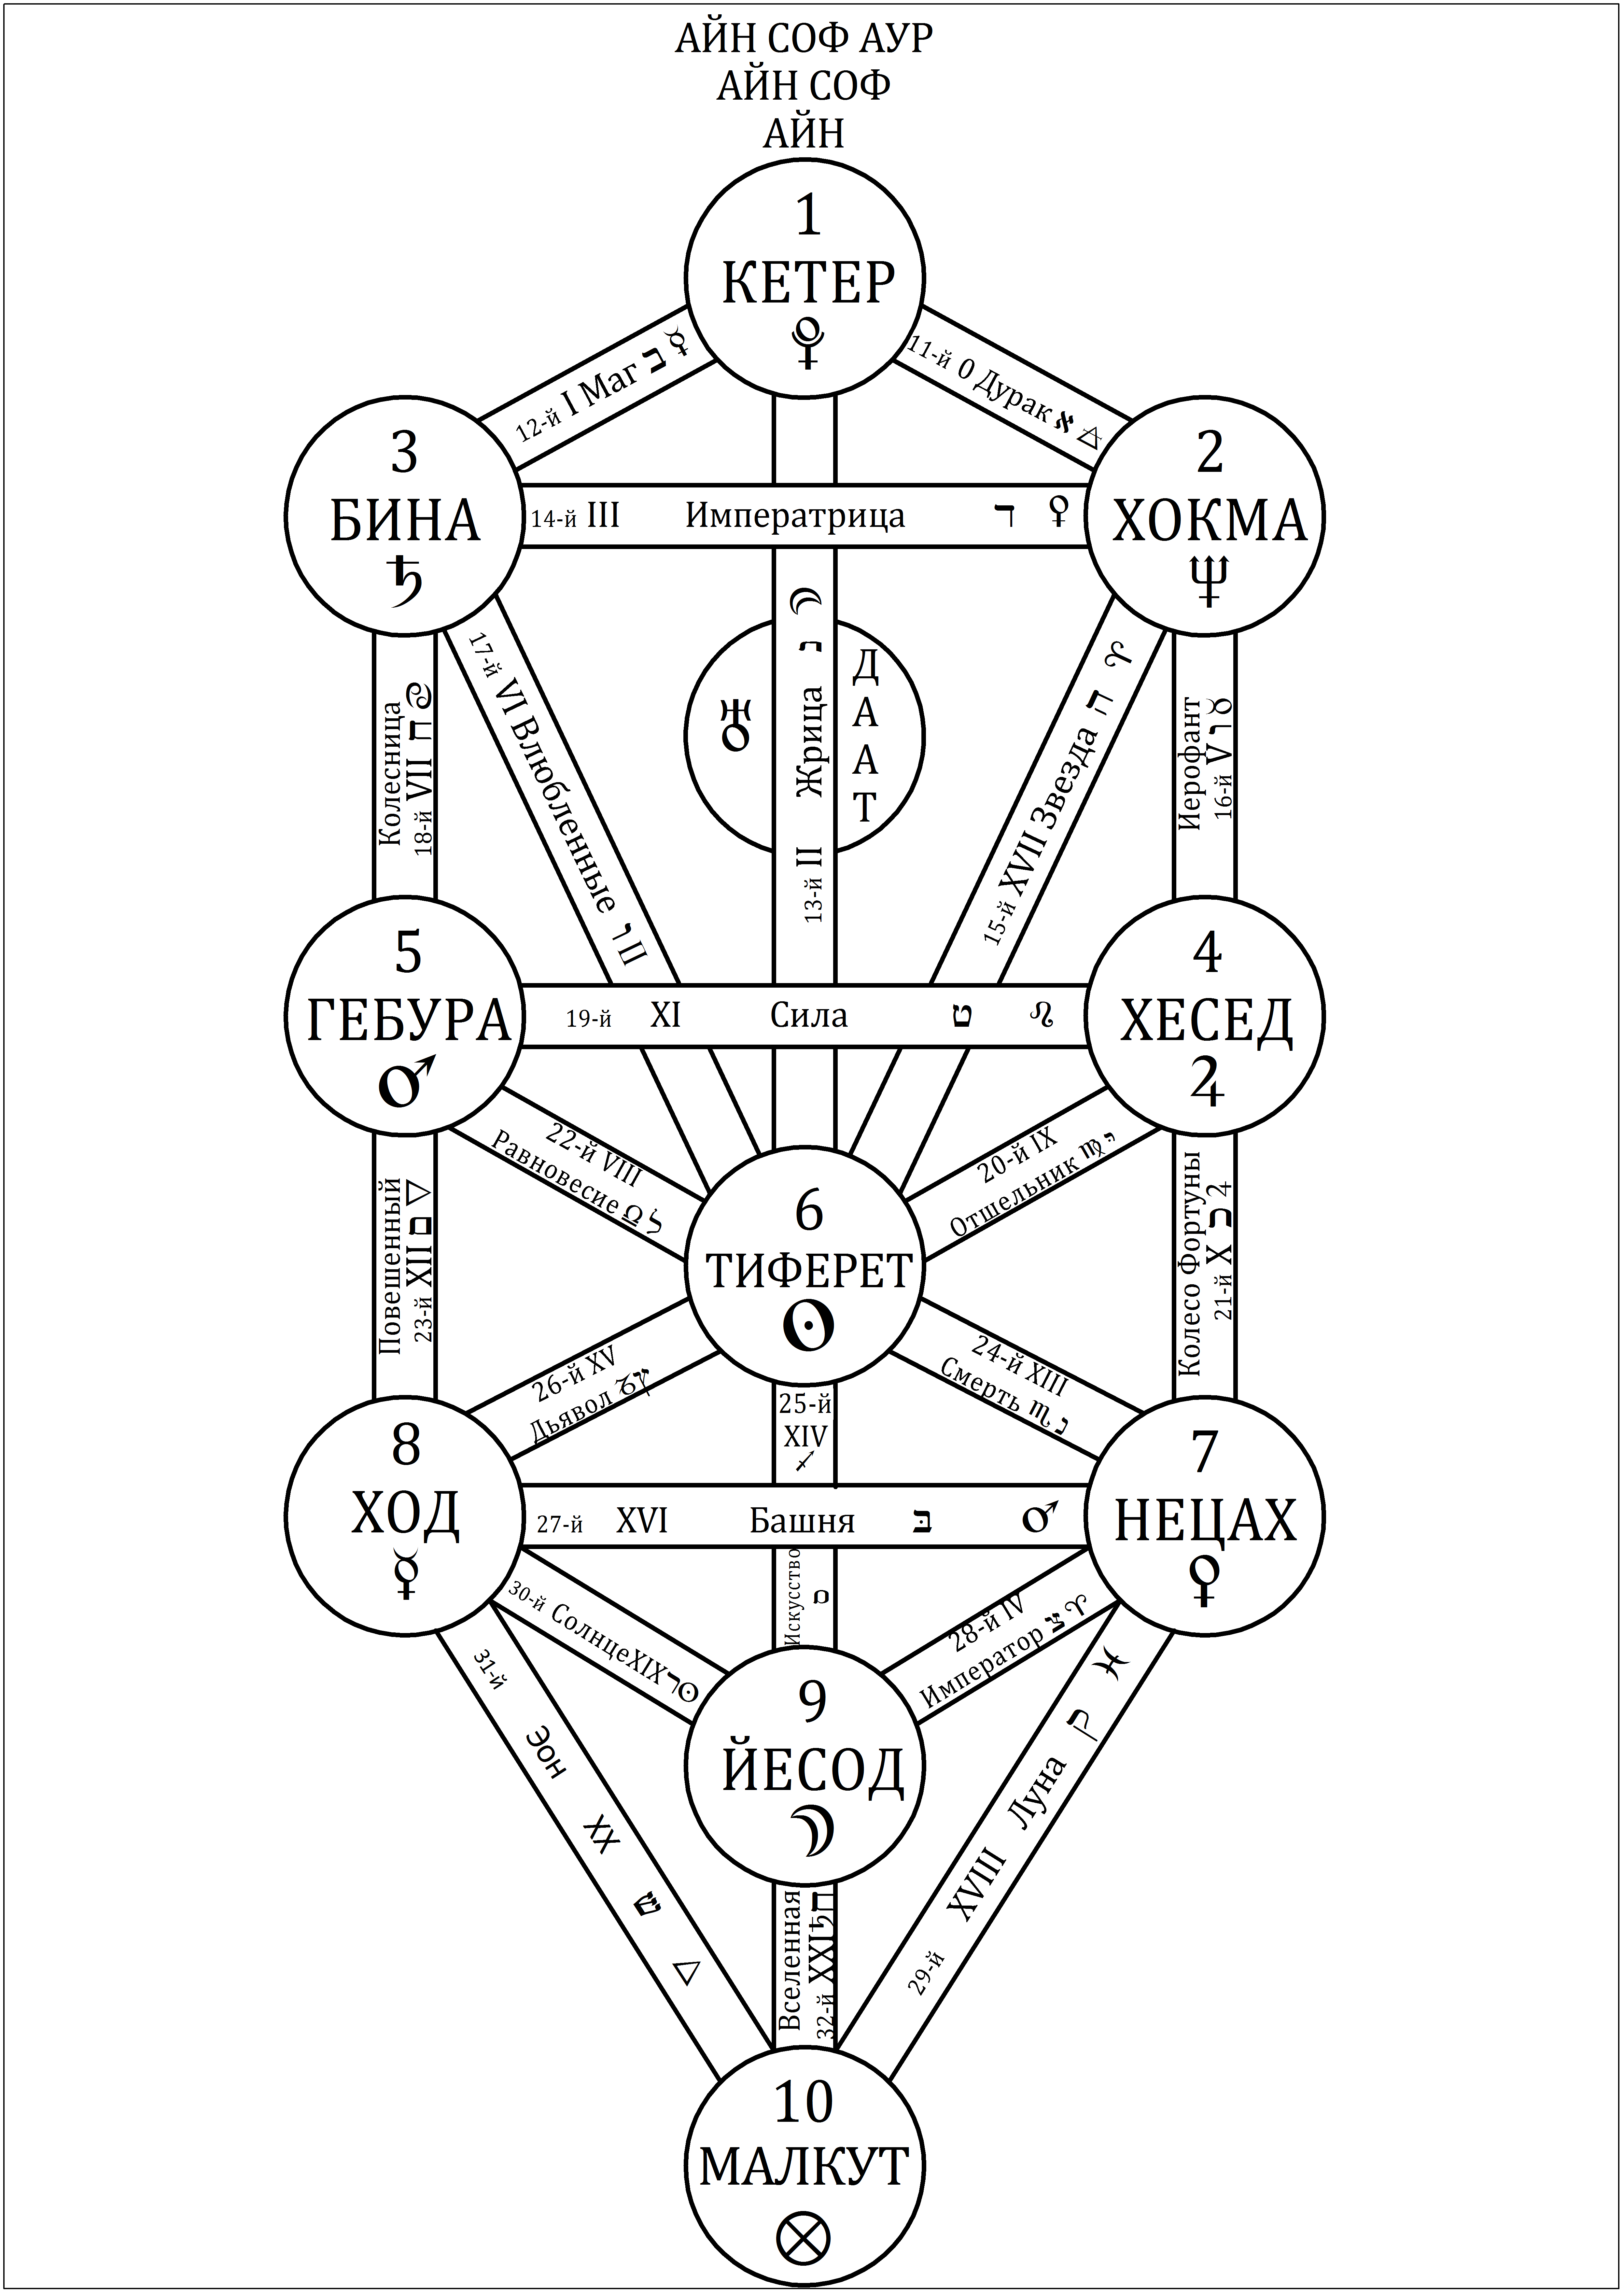  Каббалистическое Древо Жизни, демонстрирующее десять Сефирот и&nbsp;двадцать два Пути с&nbsp;их&nbsp;основными астрологическими, элементными и&nbsp;таротическими соответствиями, принятыми в&nbsp;современной Оккультной Традиции.